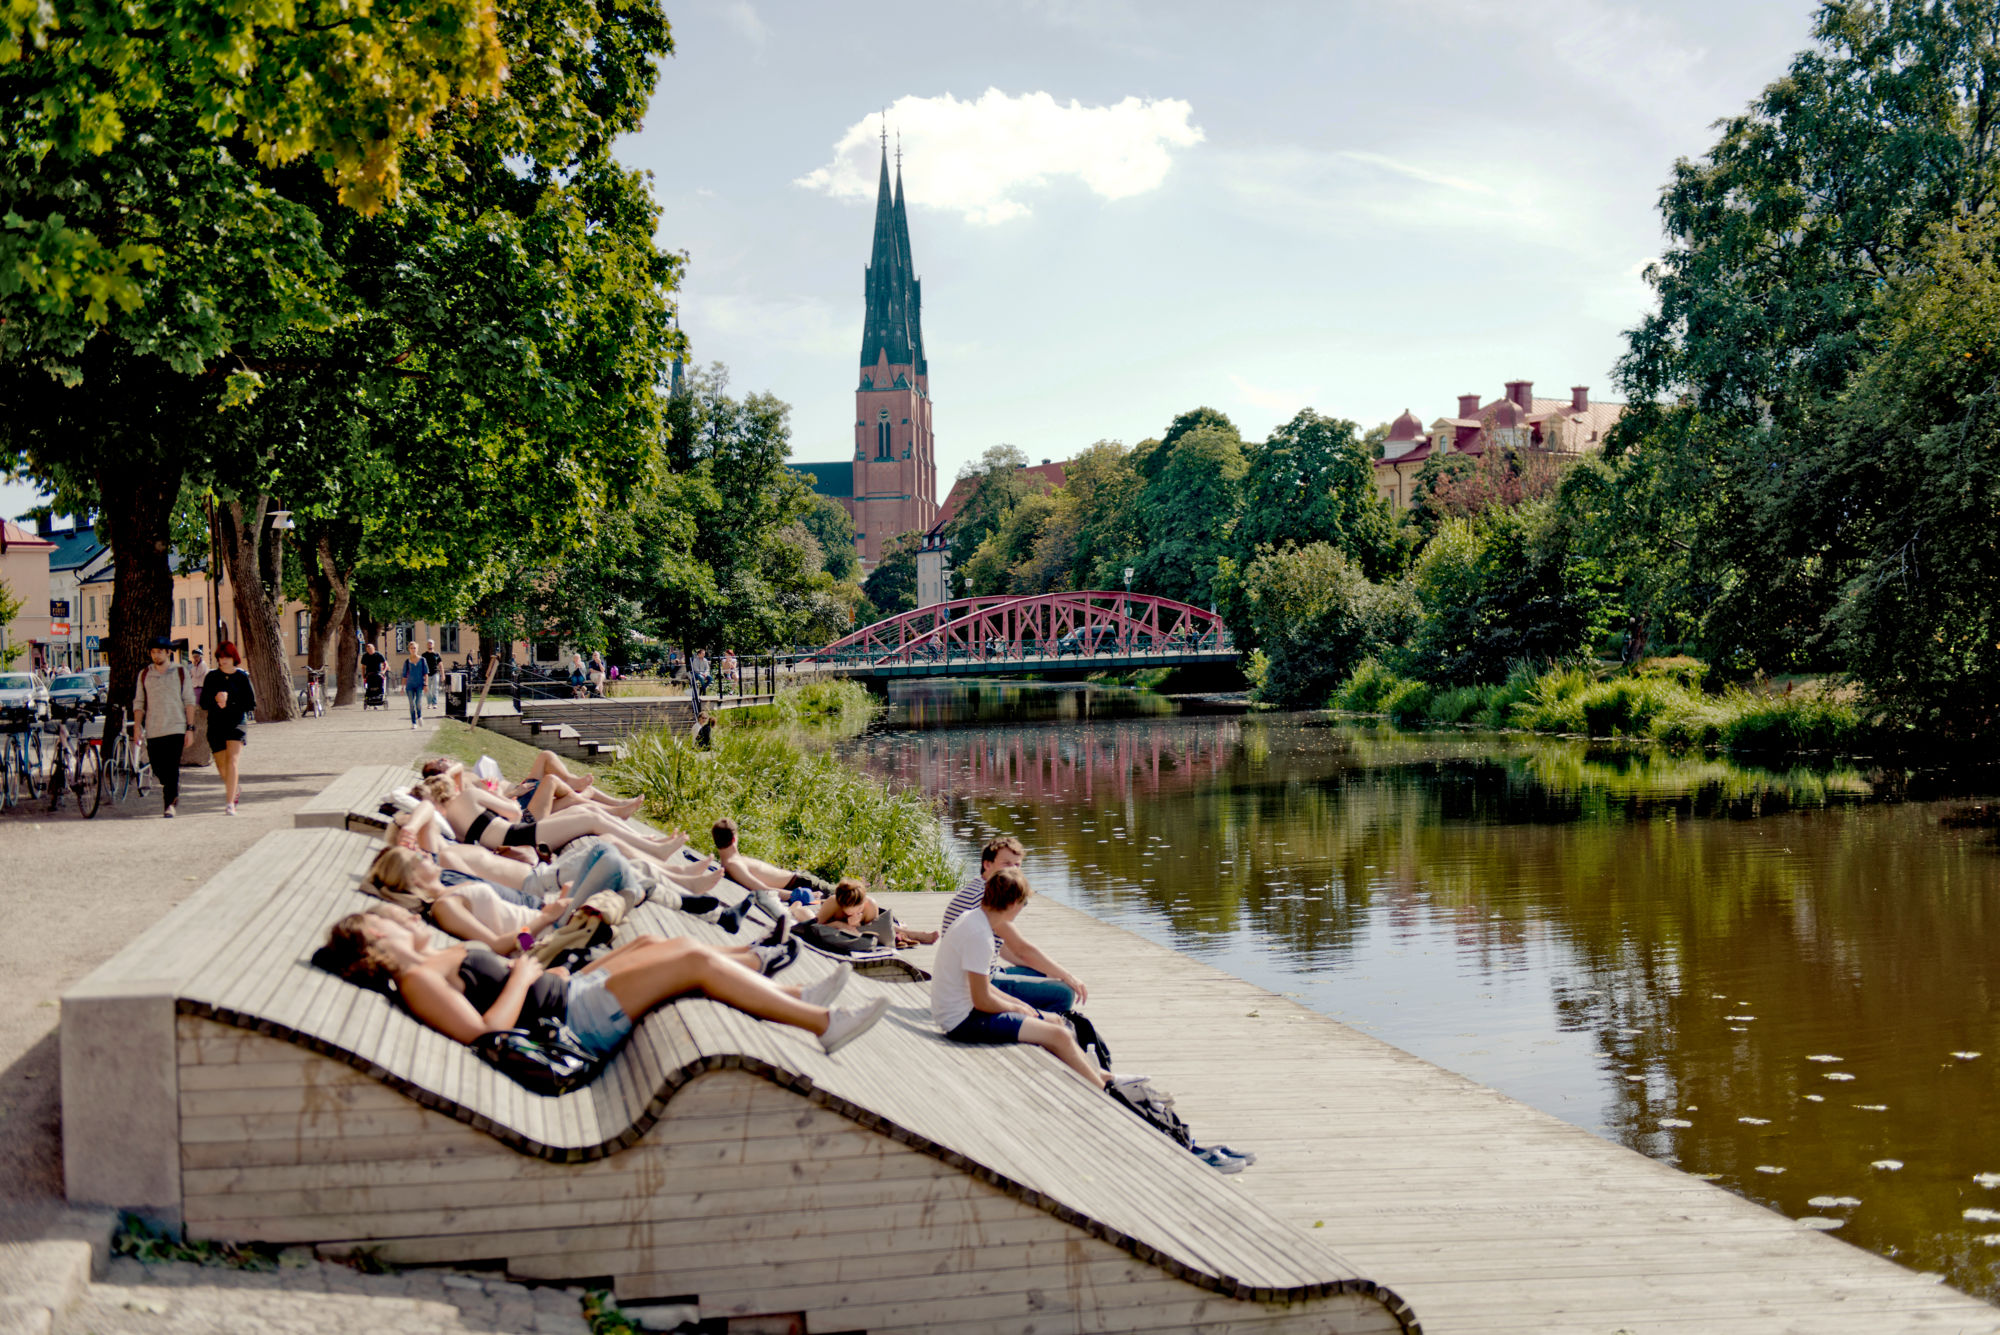 Central Uppsala in summer